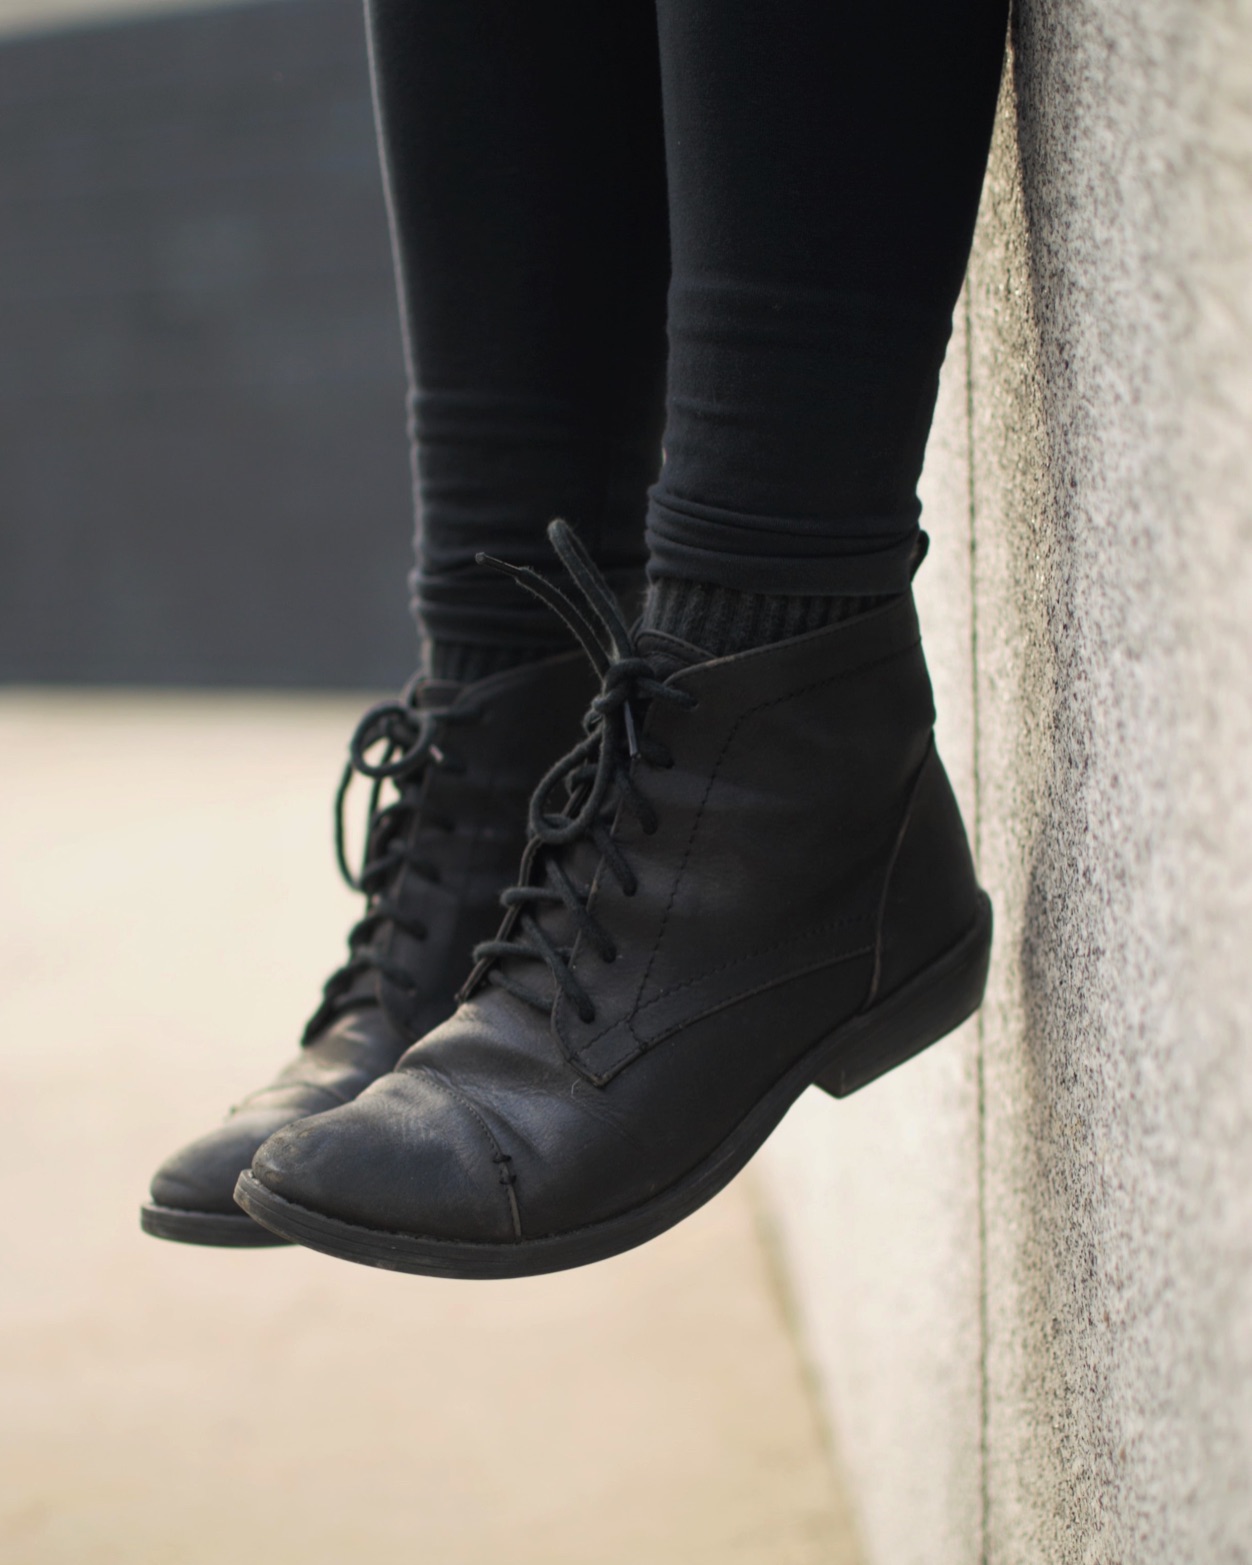 Le scarpe da donna di Calzature Pli-Pla sono eleganti, comode, fashion, trendy: Birkenstock, Friulane, Loints, El Naturalista, Jungla, ballerine